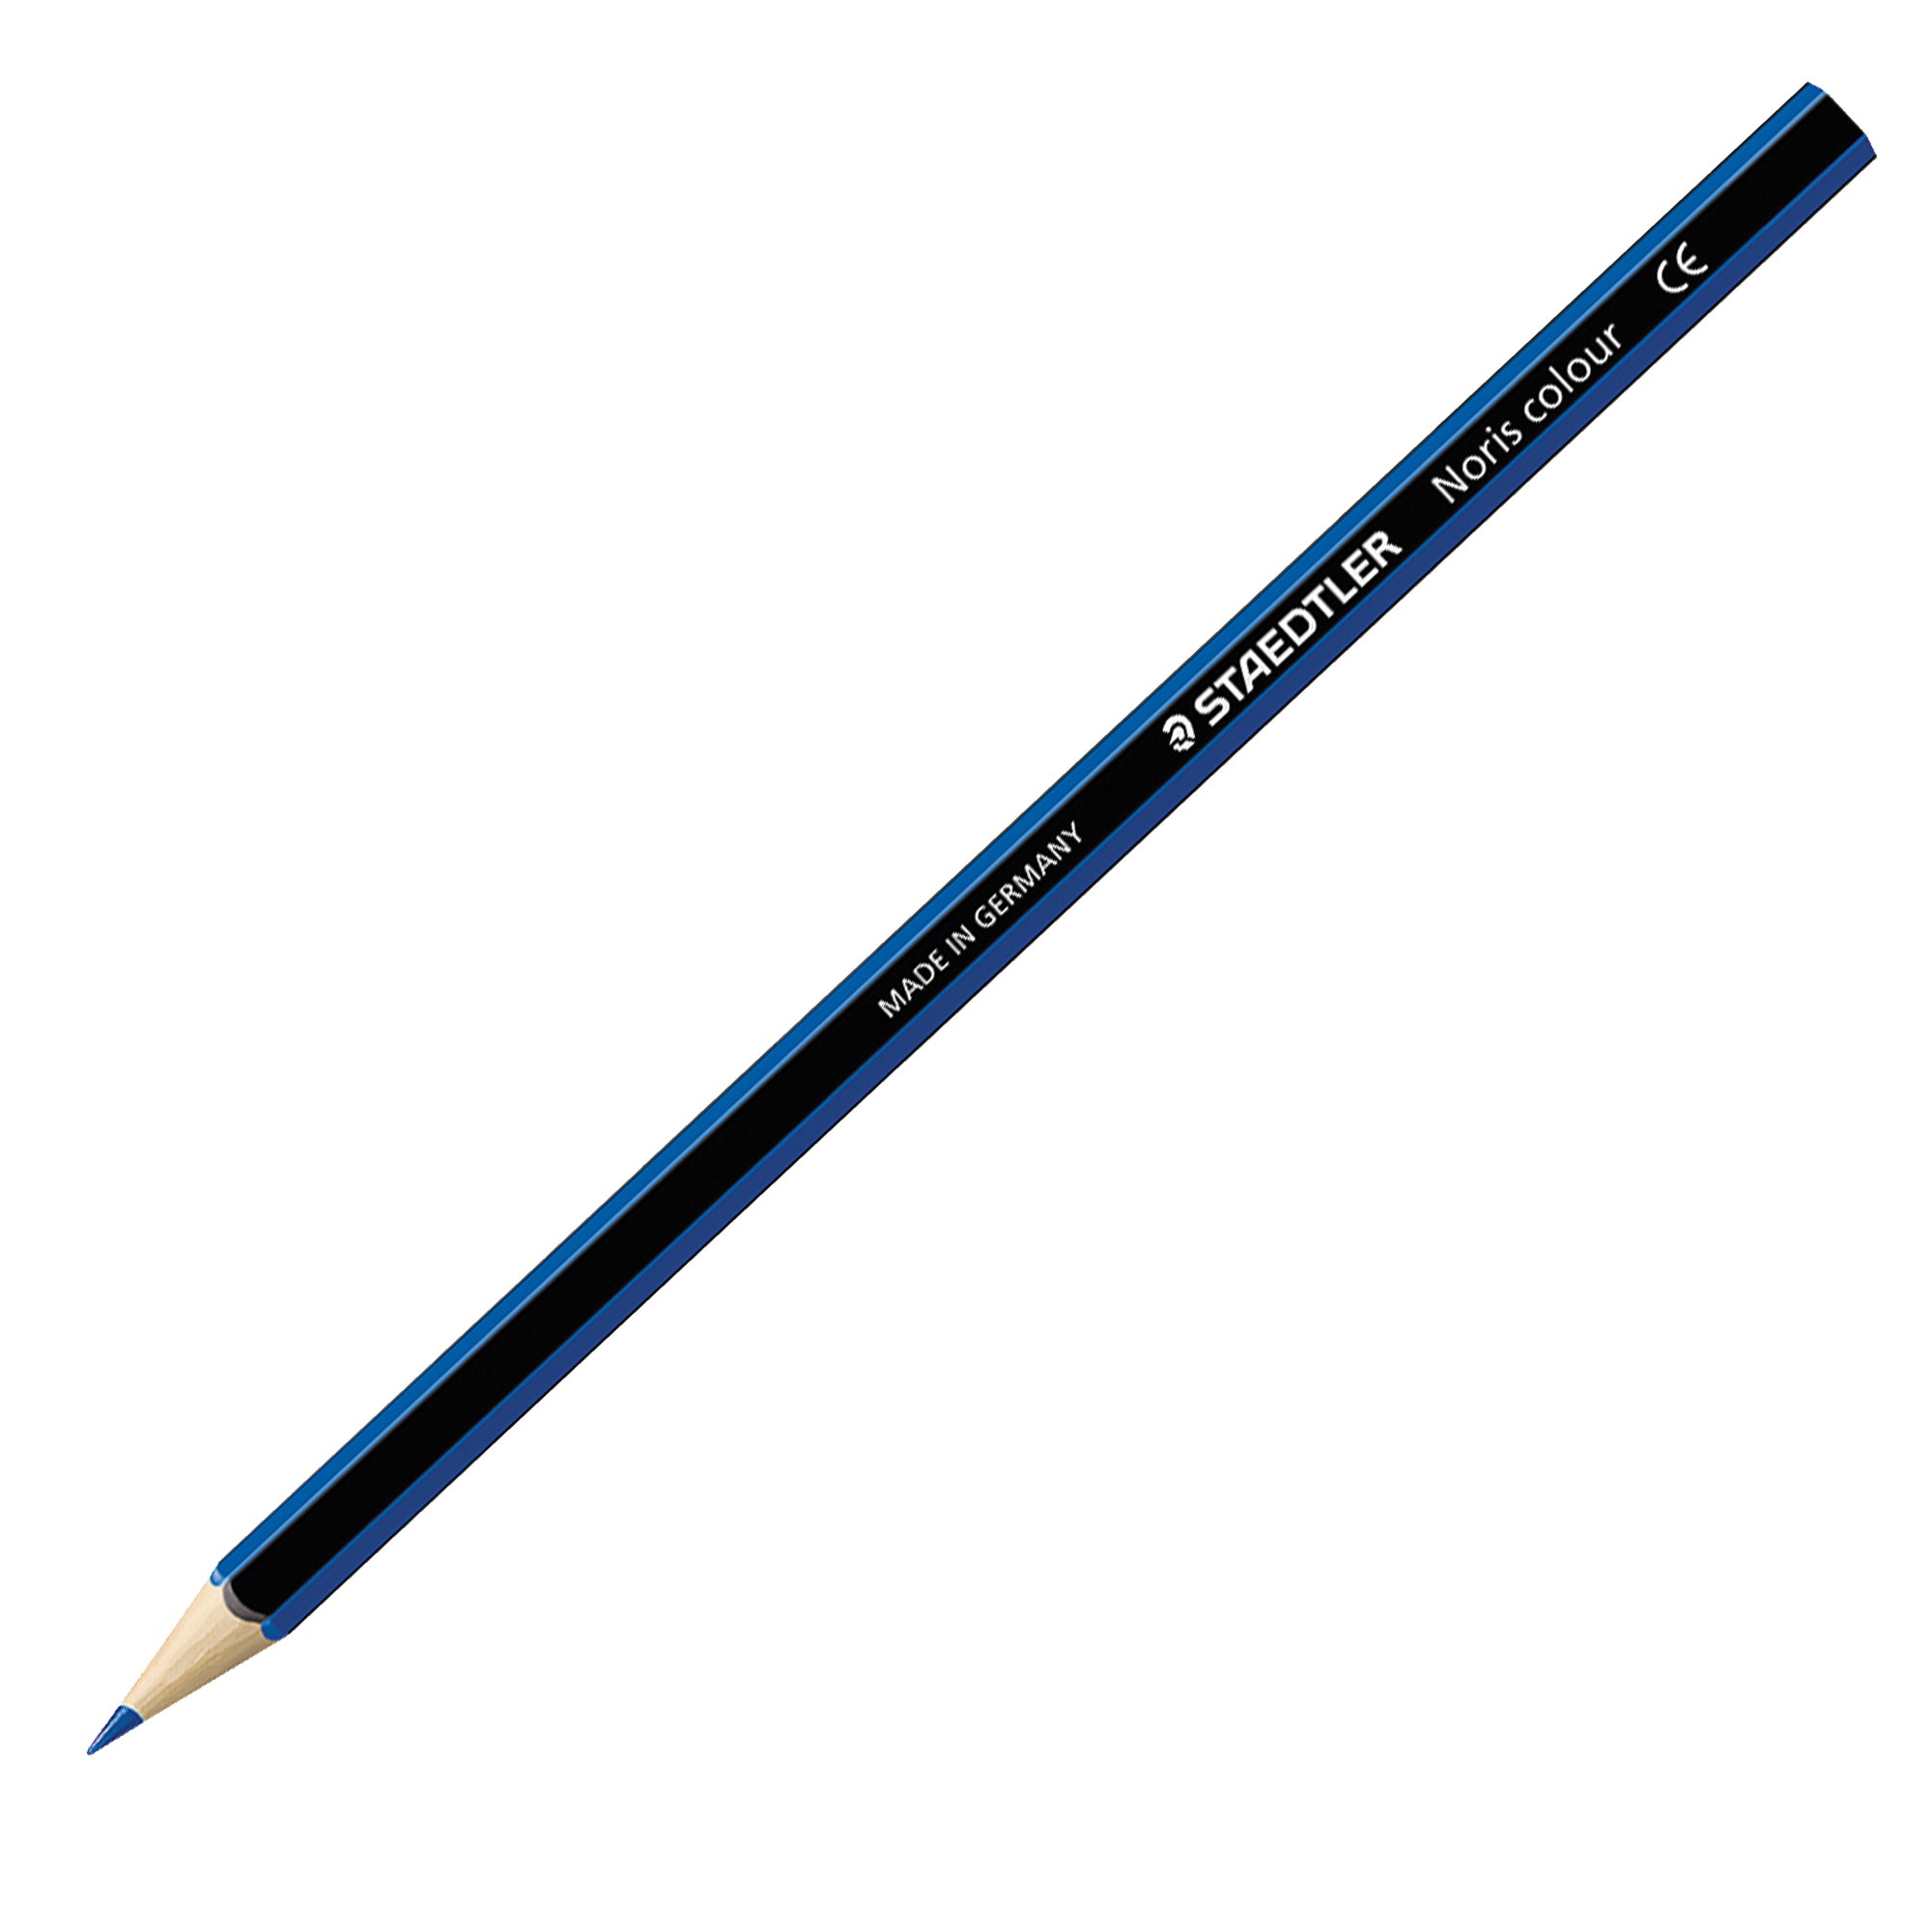 staedtler-astuccio-24-matite-noris-colour-colori-assortiti